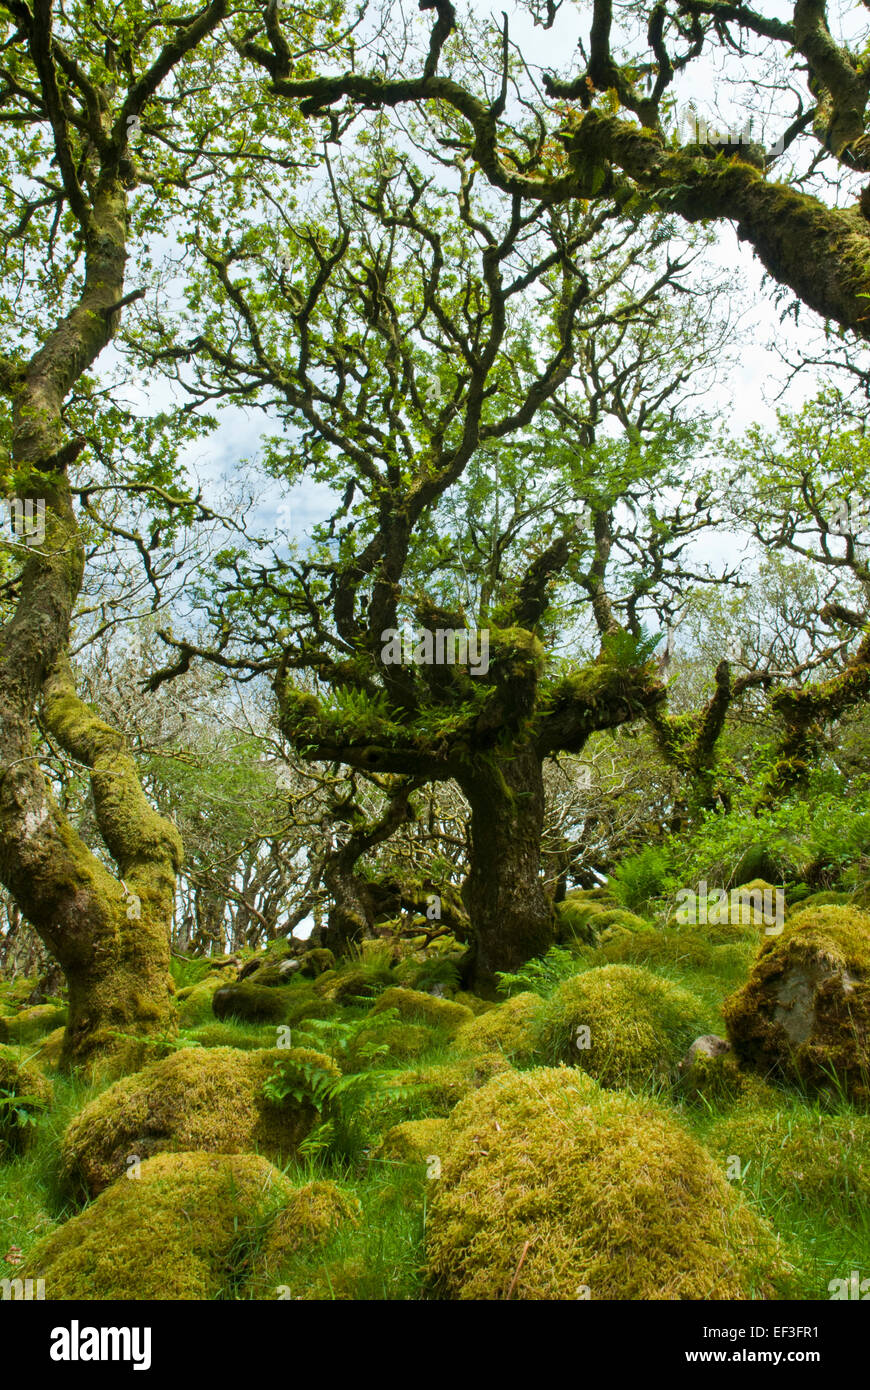 Wistman Holz, Dartmoor, Devon UK. Knorrigen alten Zwerg Eichen und Granitfelsen in grünen Moos und Farnen bedeckt. Stockfoto